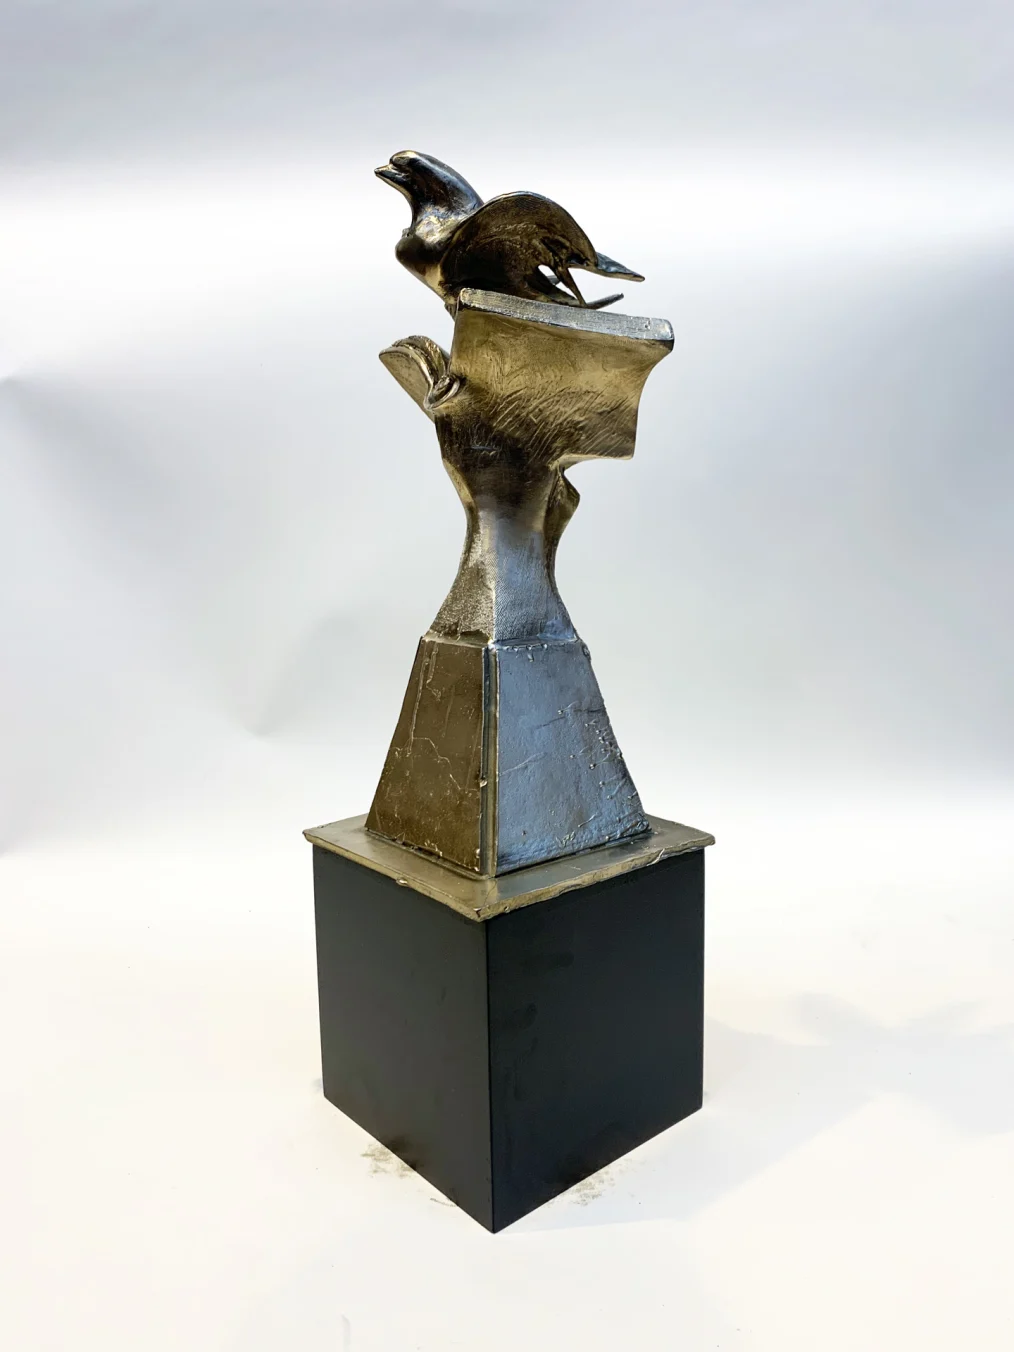 A miniature model of Richard Hunt's "Book Bird," made of bronze.